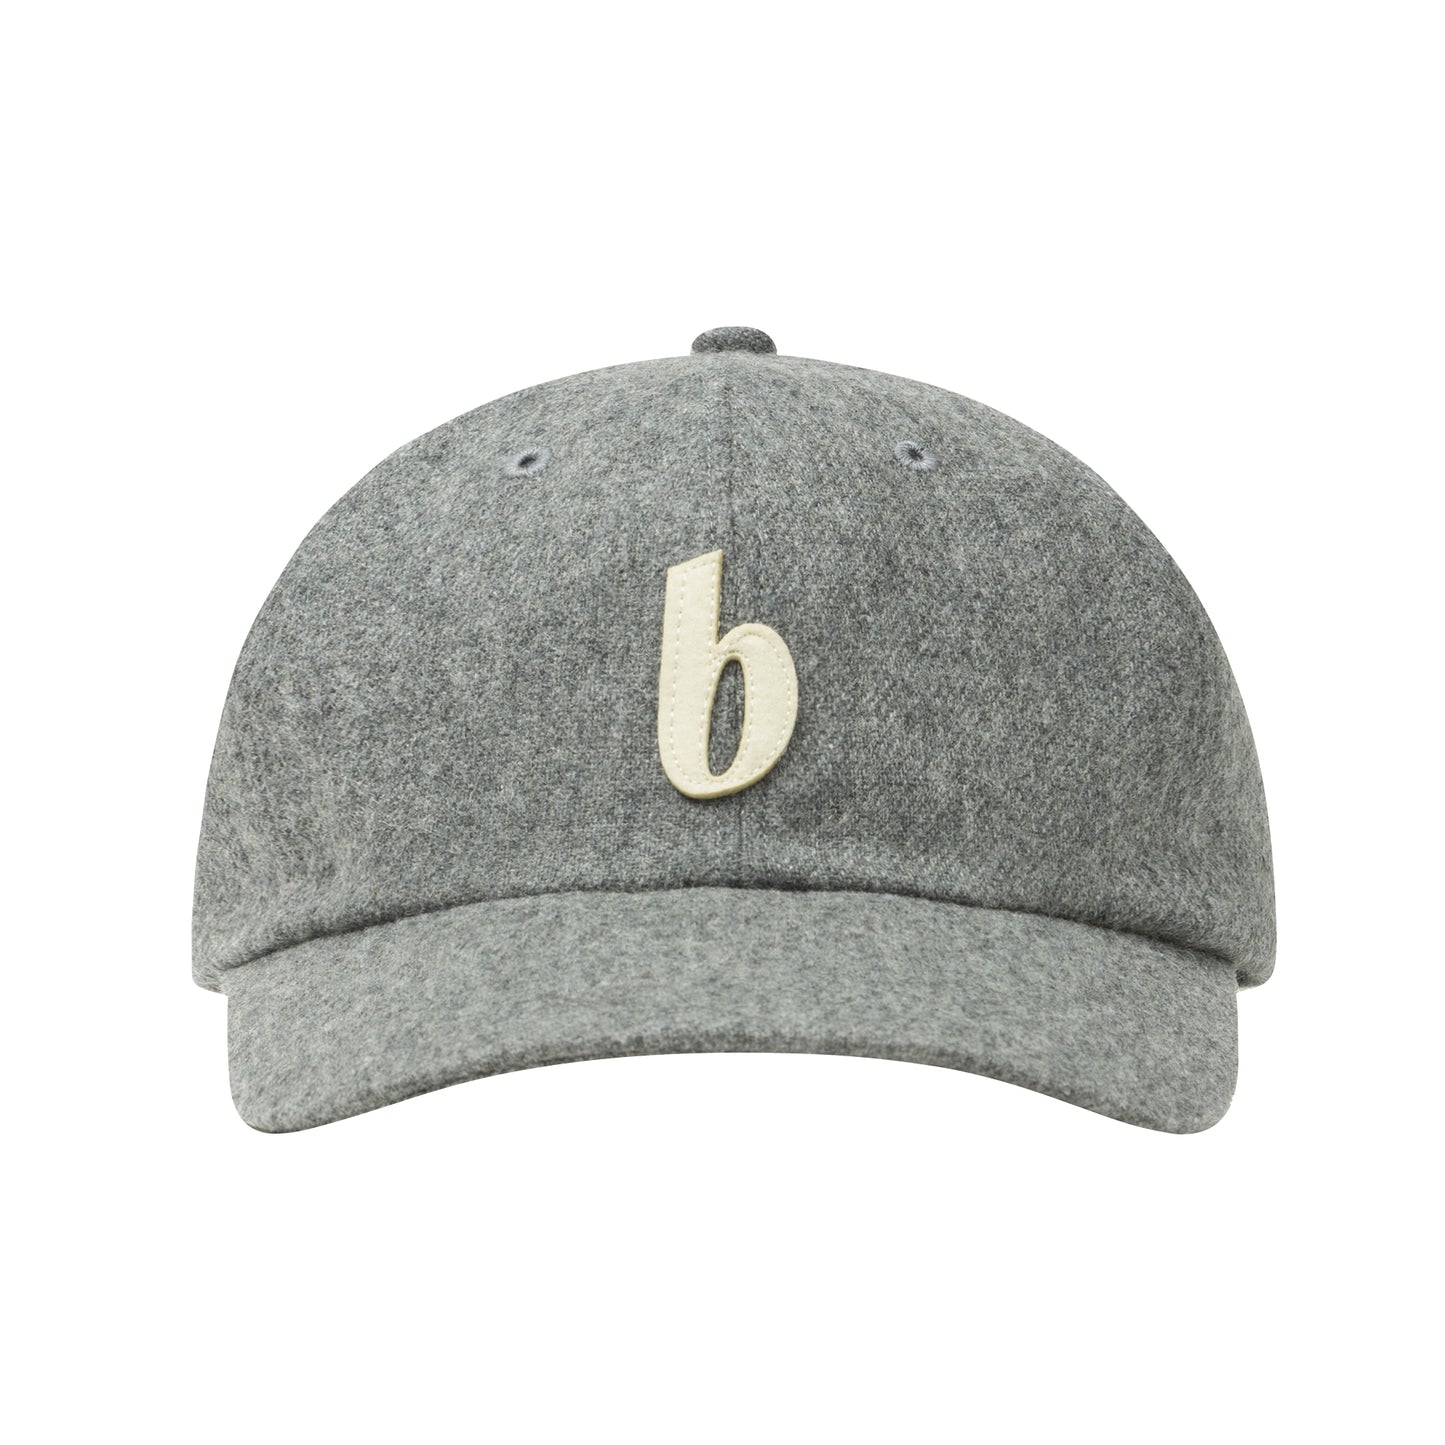 b 6P Wool Cap (gray)